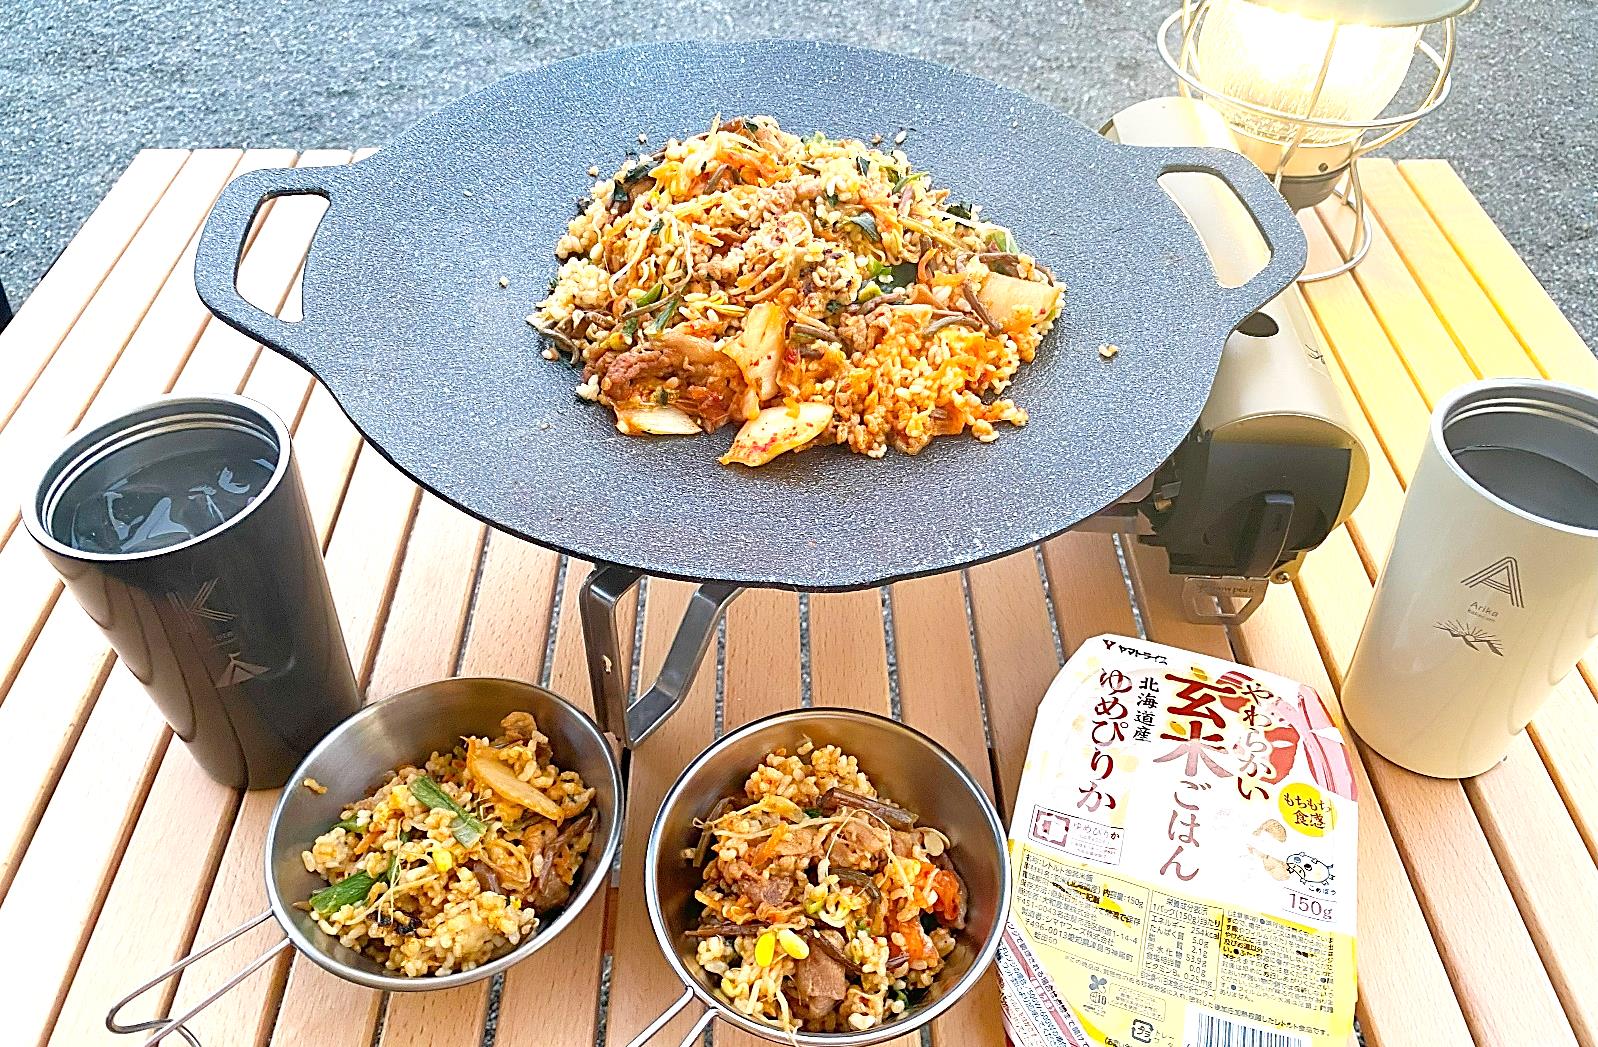 パックご飯「やわらかい玄米ごはん」使用のアウトドア料理/大和産業